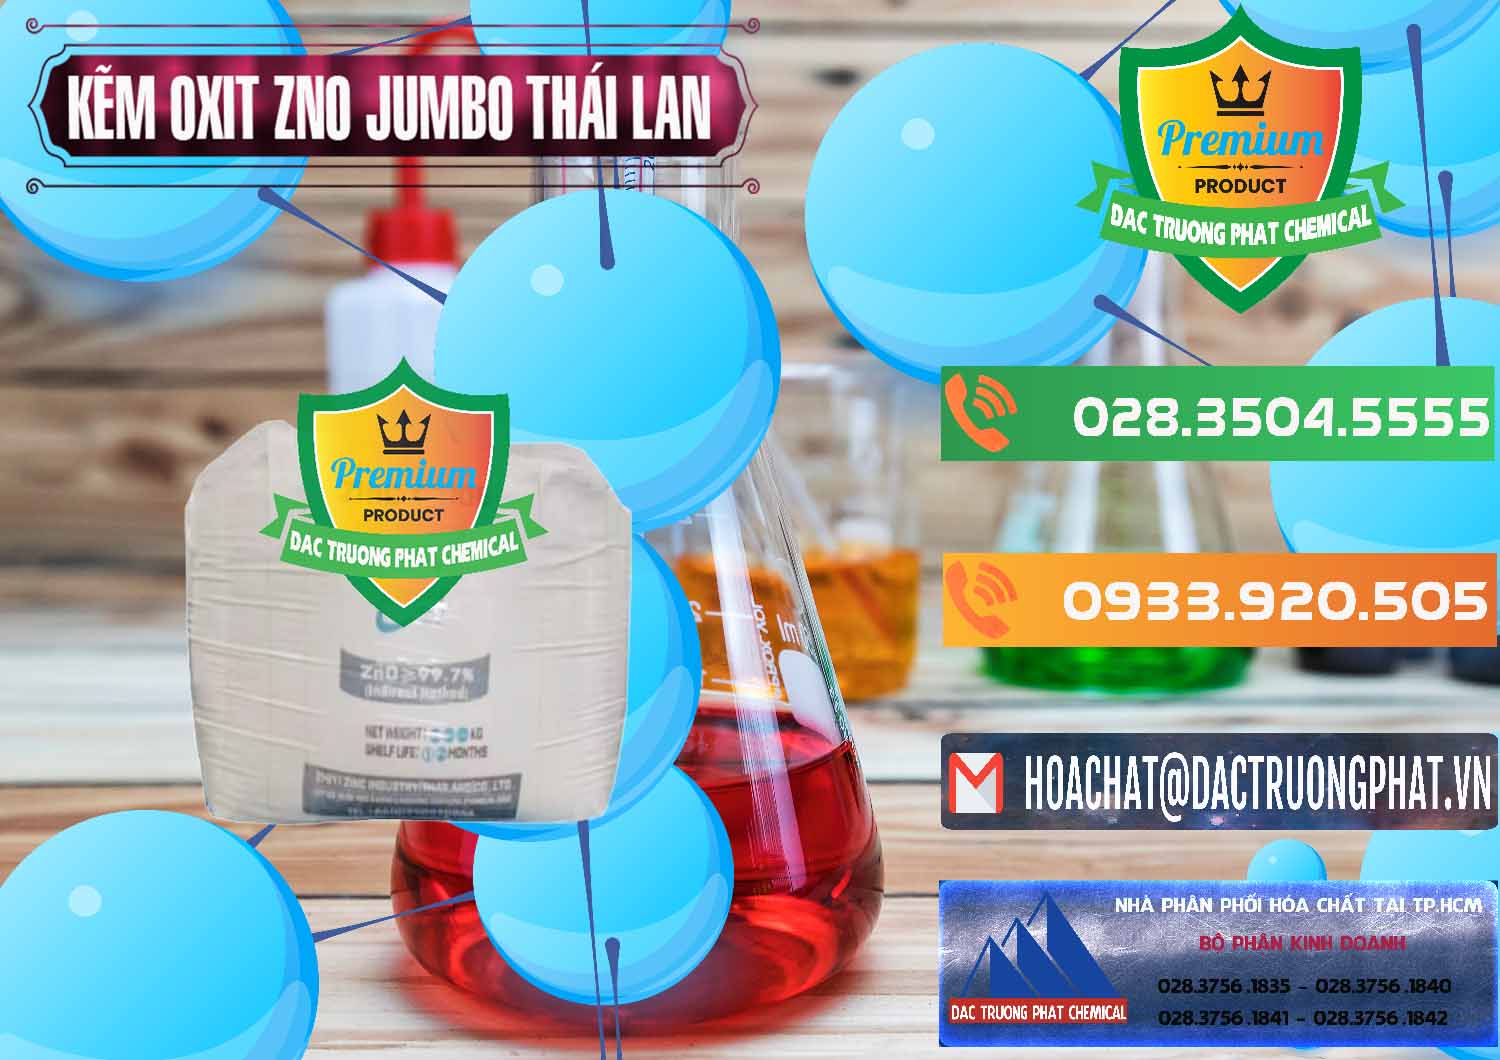 Nơi chuyên bán & phân phối Zinc Oxide - Bột Kẽm Oxit ZNO Jumbo Bành Thái Lan Thailand - 0370 - Chuyên cung cấp và phân phối hóa chất tại TP.HCM - hoachatxulynuoc.com.vn